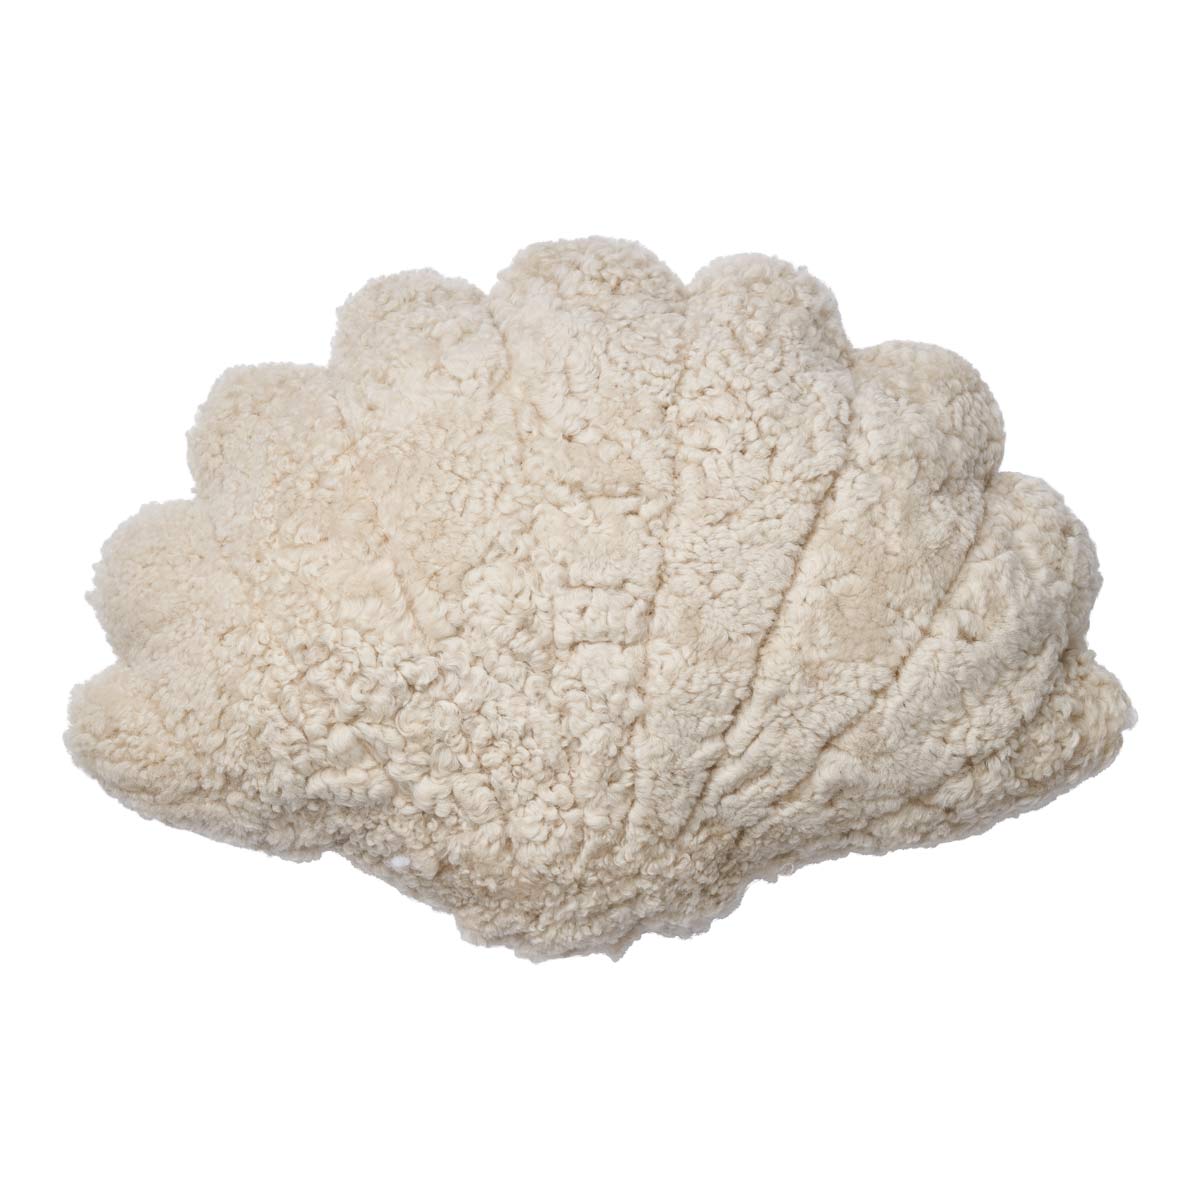 Mussel pillow | Lambskin | New Zealand | 35x50 cm.